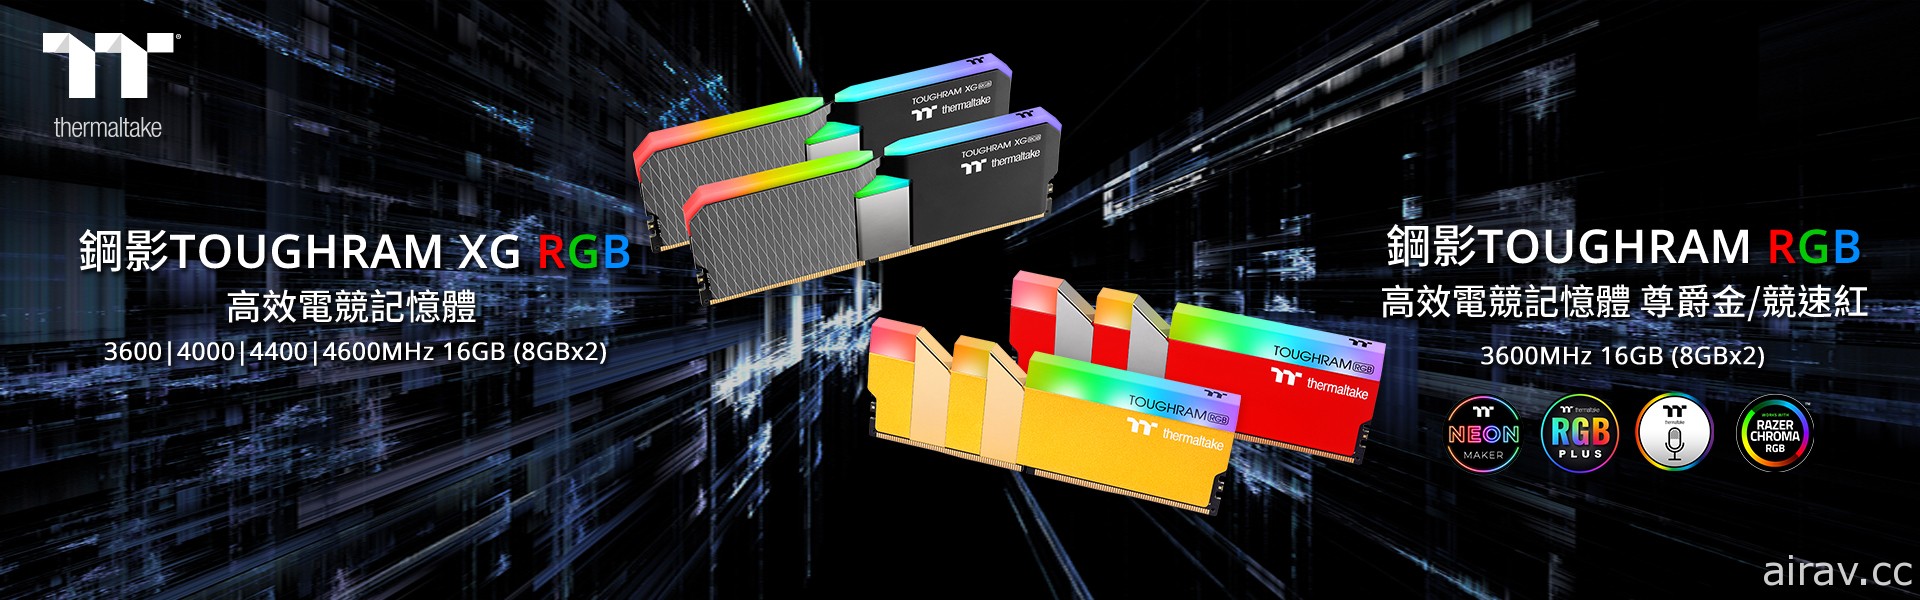 鋼影 TOUGHRAM XG RGB 16 LED 系列和鋼影 TOUGHRAM RGB DDR4 新色記憶體發售